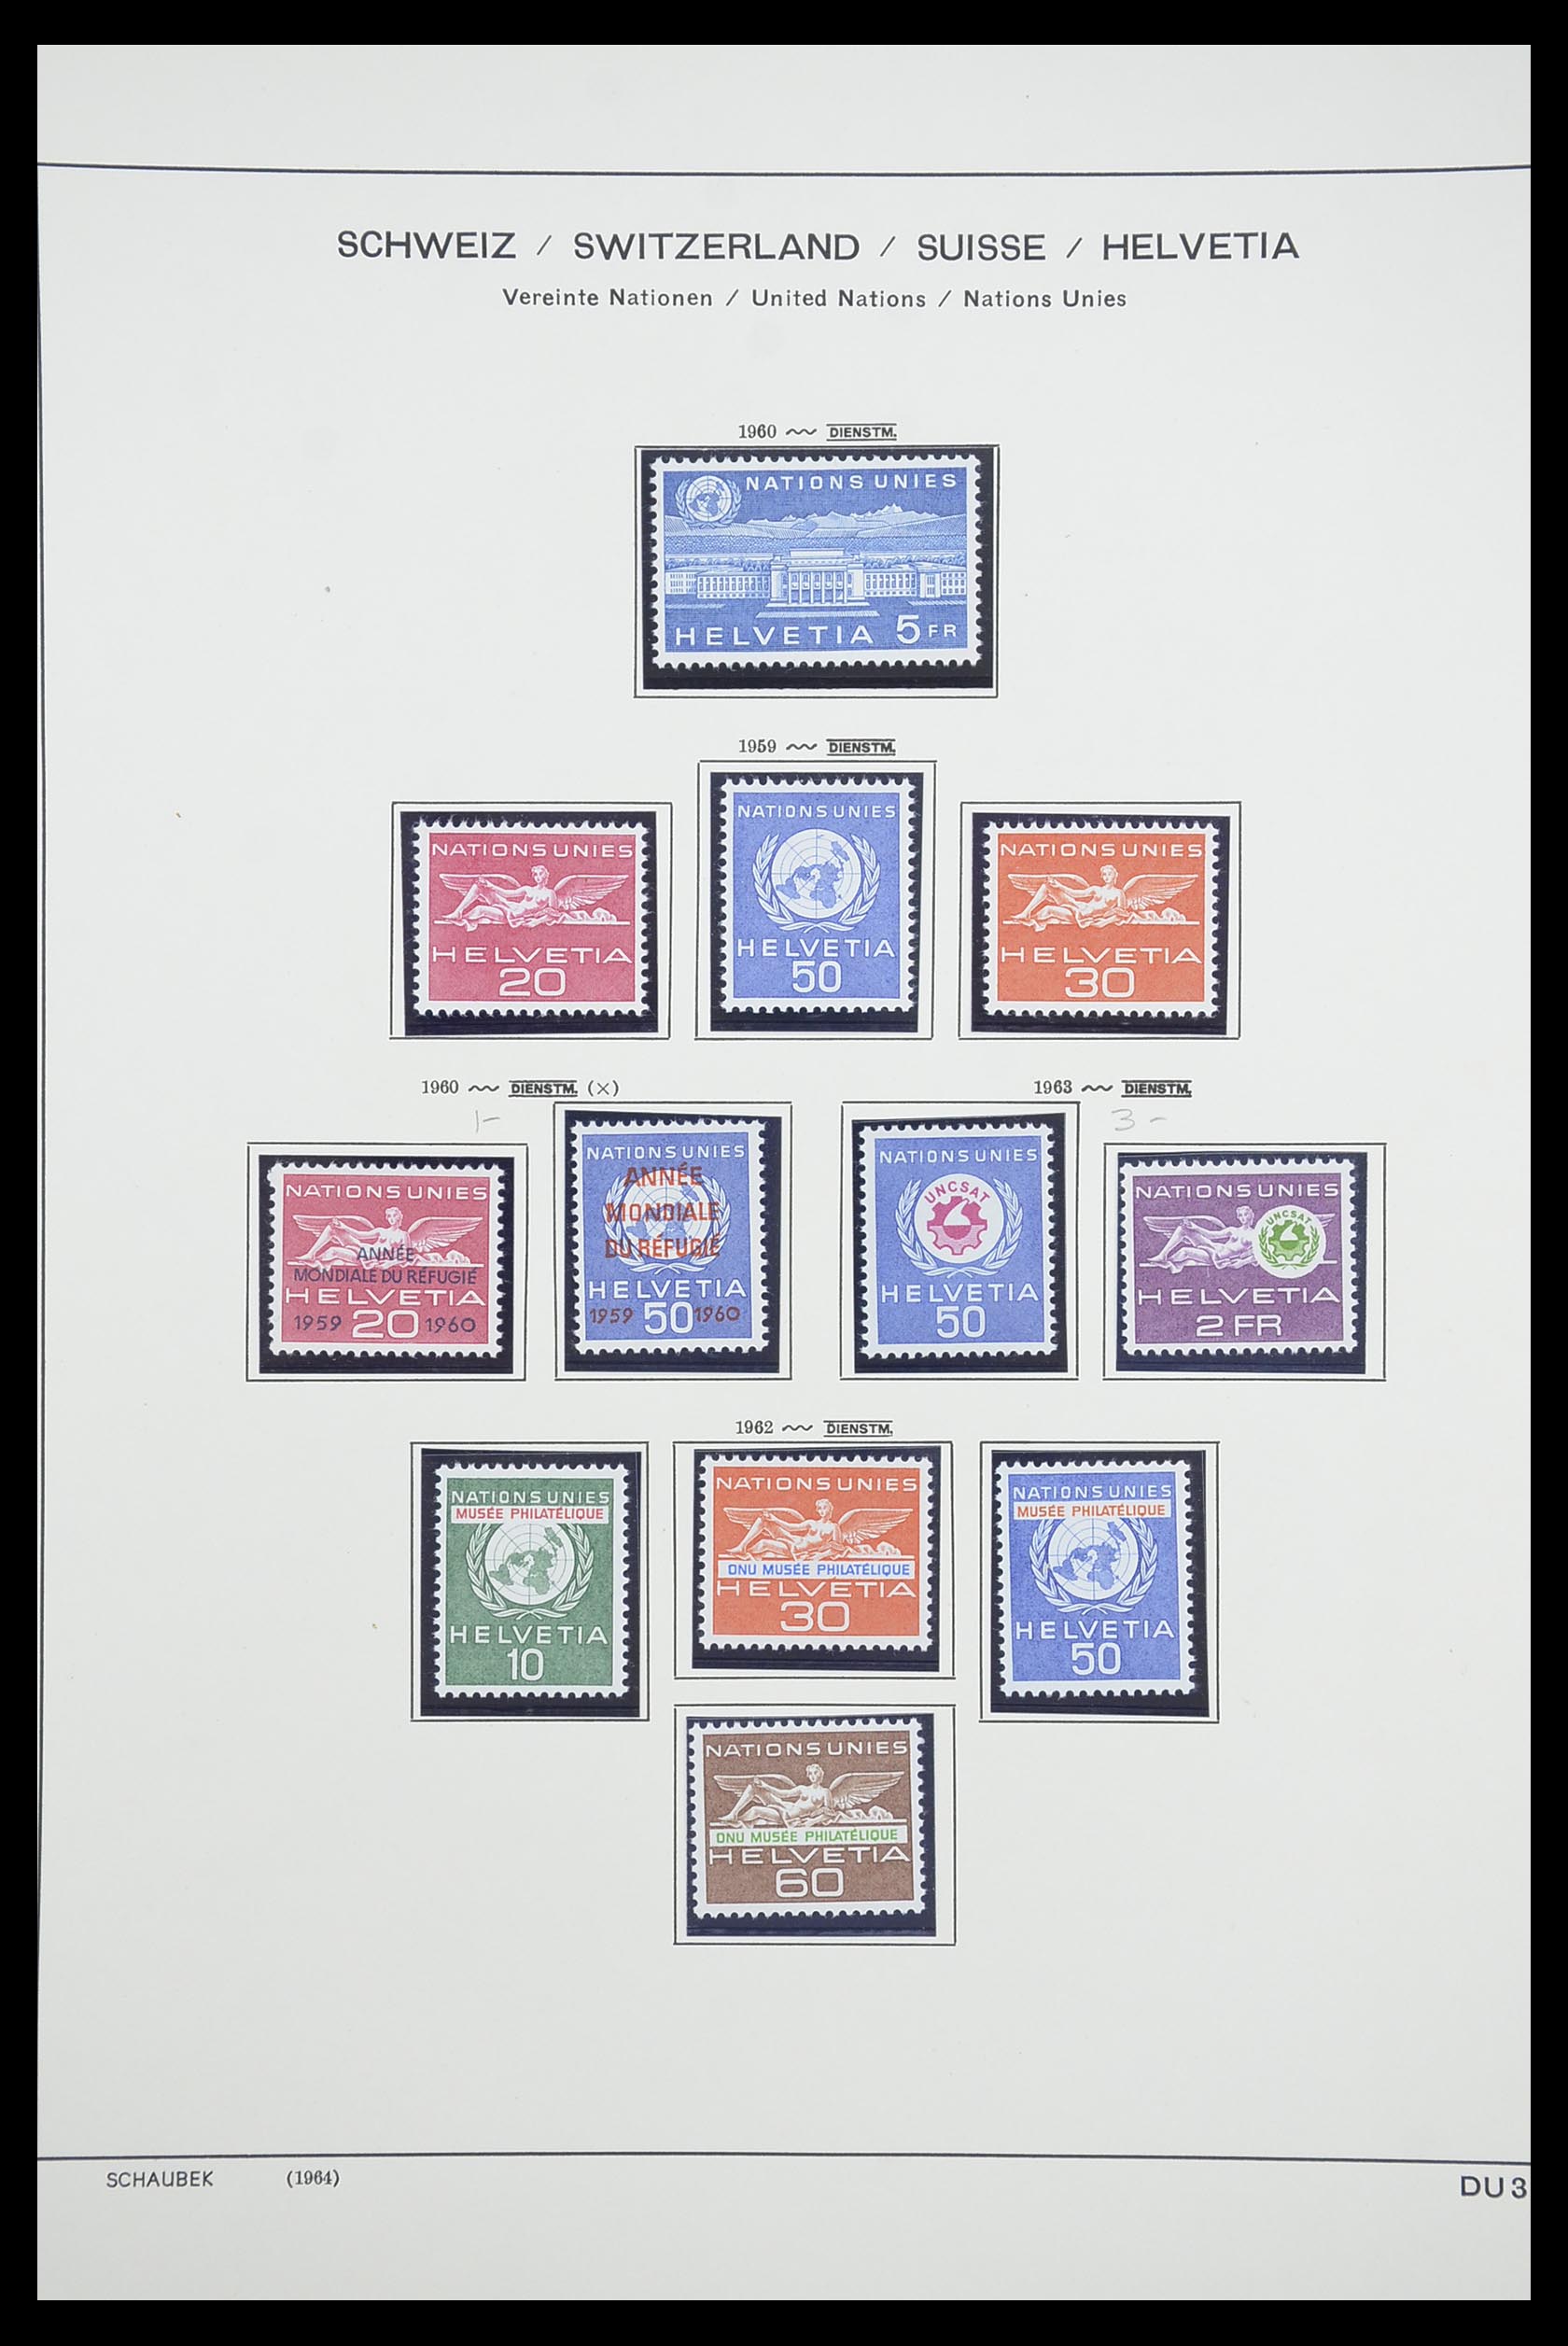 33926 015 - Postzegelverzameling 33926 Zwitserland uitzoekpartij 1850-1997.